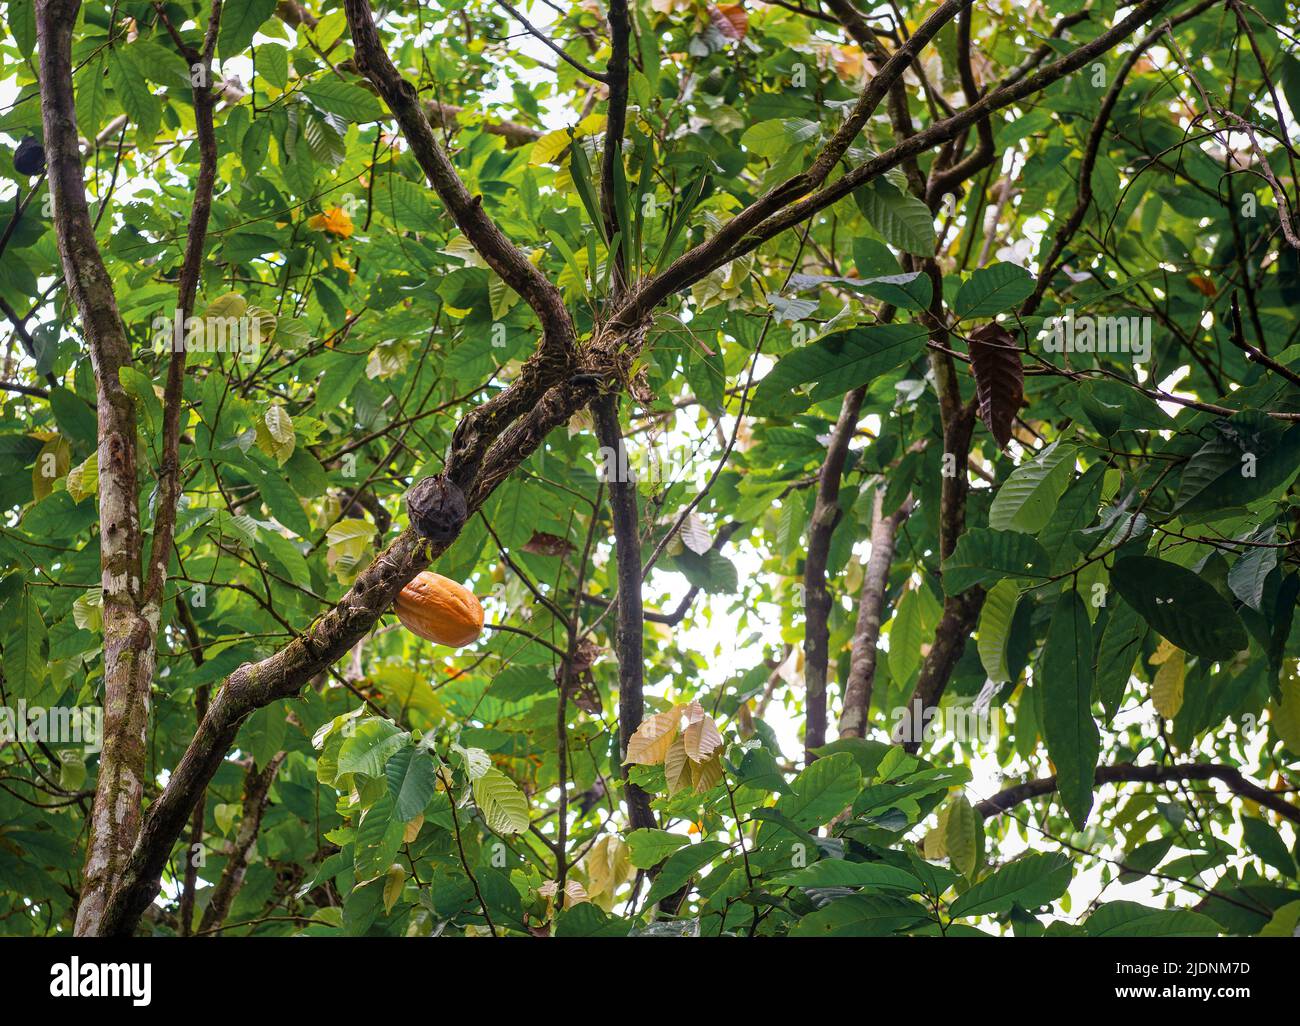 Fruto de cacao amarillo maduro de aroma fino (Theobroma cacao) en la selva amazónica del Ecuador. Foto de stock